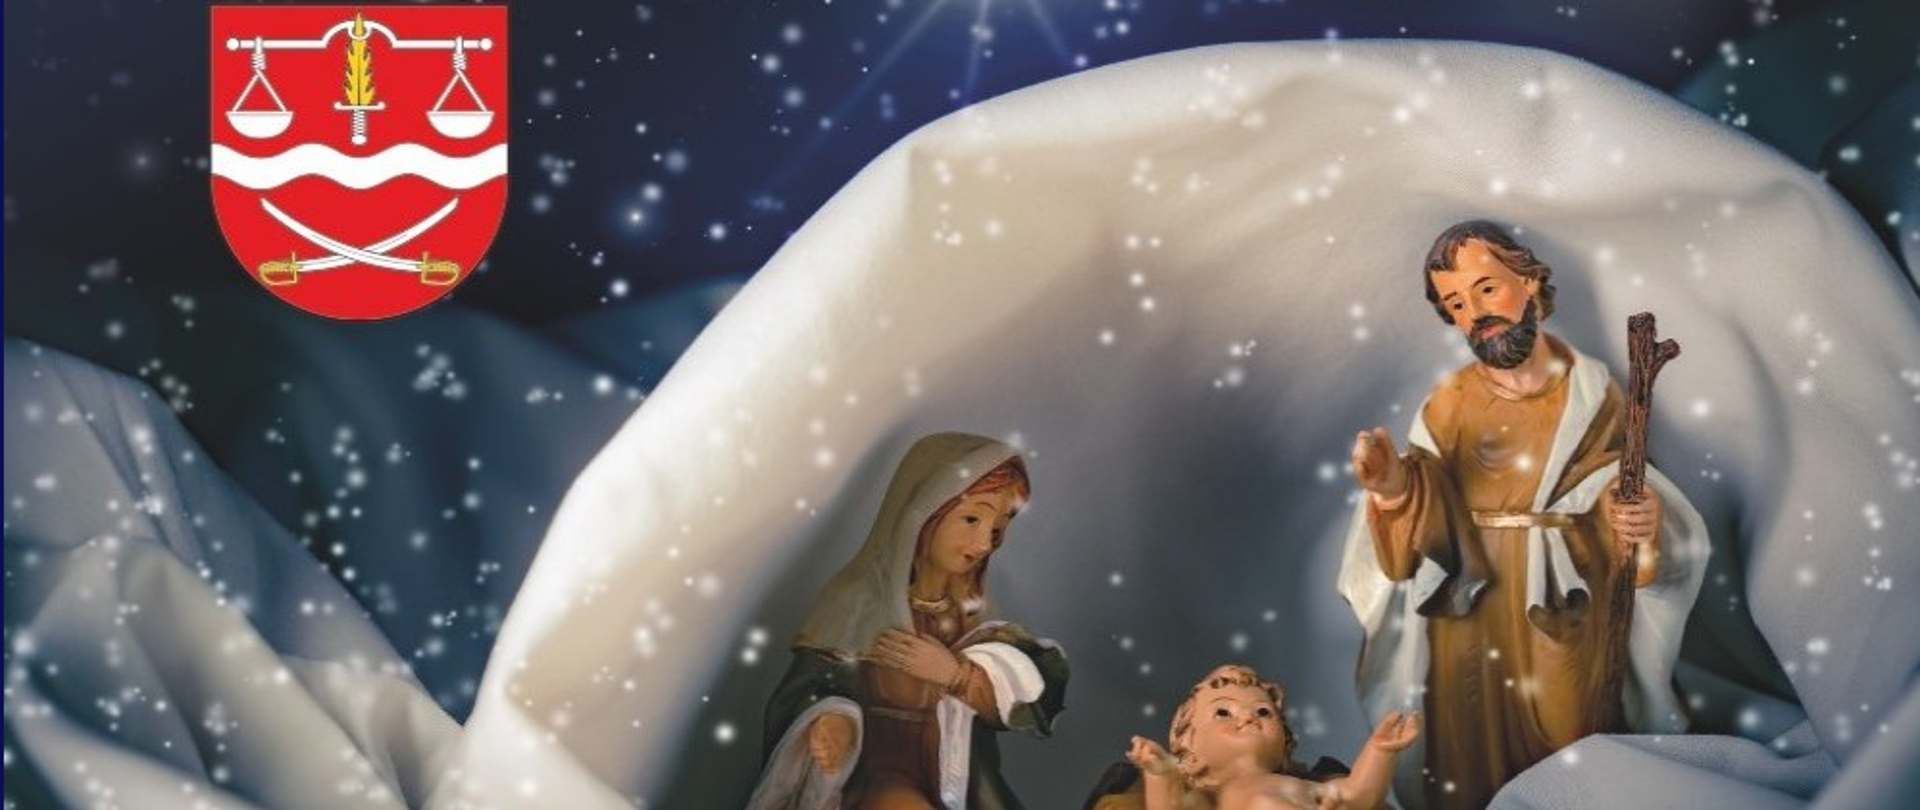 Grafika przedstawia zdjęcie figurek małego Jezusa w żłóbku, pochylonej nad nim Maryi oraz stojącego świętego Józefa w zaśnieżonej grocie. Nad nimi granatowe niebo i gwiazda. W lewym górnym rogu zdjęcia herb Powiatu Siedleckiego. Pod zdjęciem życzenia: Święta Bożego Narodzenia to wyjątkowy czas radości z przyjścia na świat dzieciątka Jezus. Niech dla wszystkich Państwa będą to dni pełne miłości, rodzinnego ciepła, zrozumienia, wspólnego świętowania i atmosfery bliskości. Niech Nowy Rok każdego dnia przynosi same dobre chwile i pozwala na realizację prywatnych oraz zawodowych planów życzą Marek Gorzała Przewodniczący Rady Powiatu w Siedlcach, Małgorzata Cepek Wicestarosta Siedlecki, Karol Tchórzewski Starosta Siedlecki